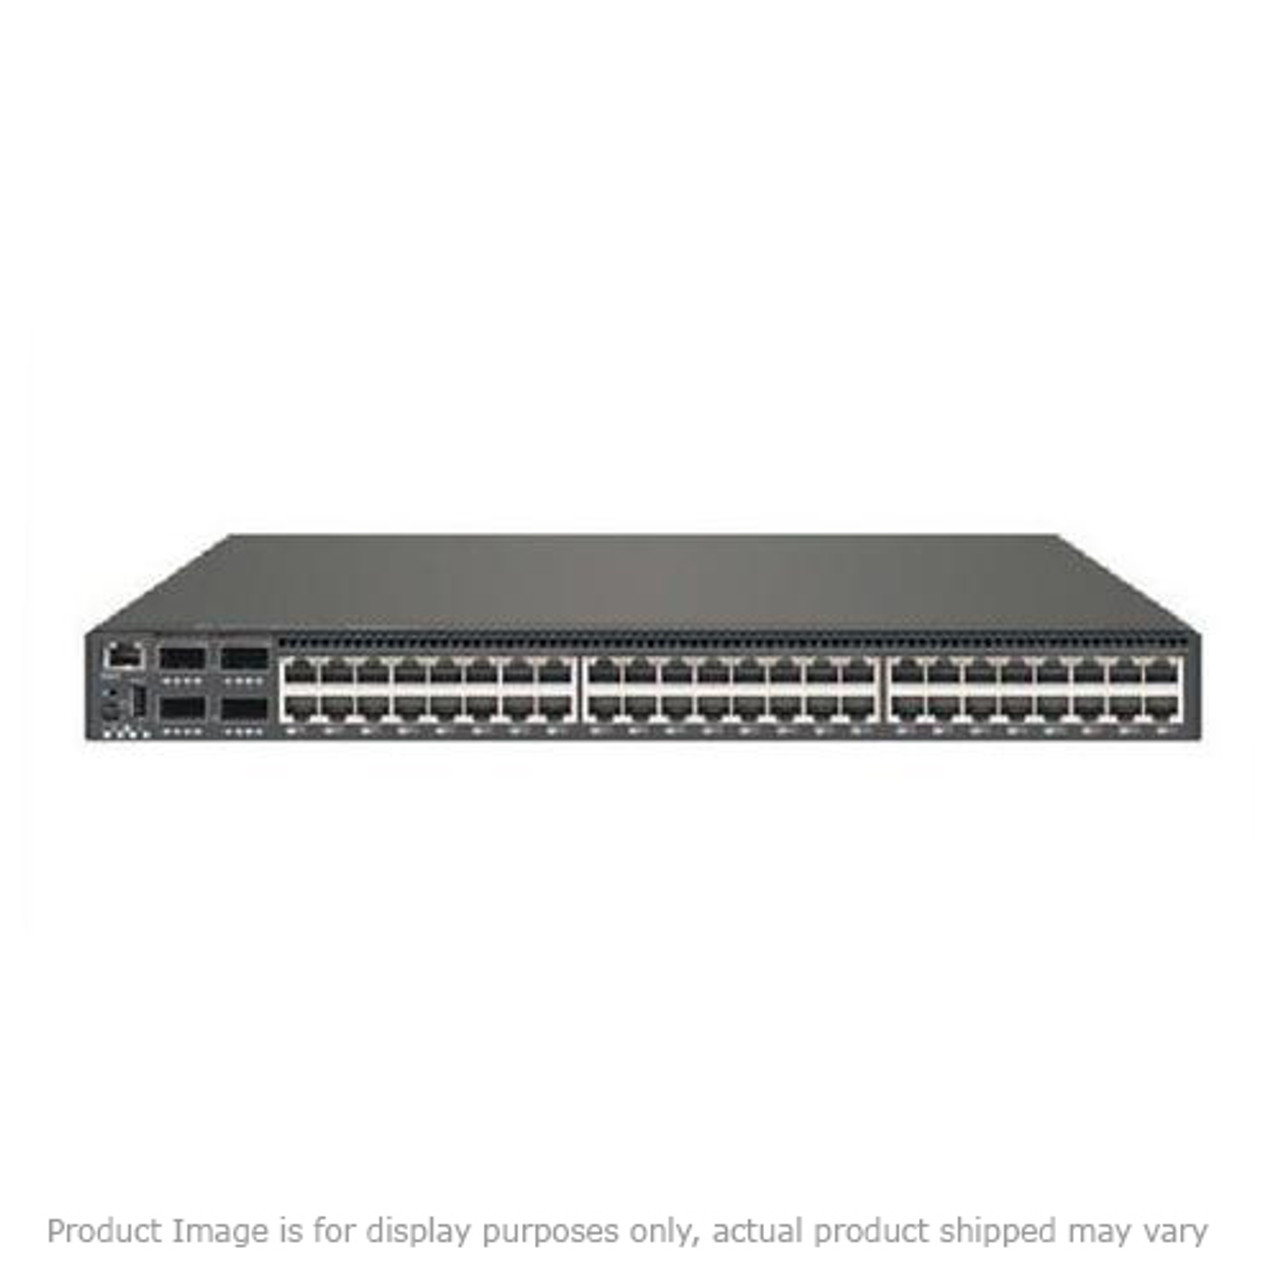 30L6607 IBM 24 Port 10/100BaseTX Ethernet Switch (Refurbished)